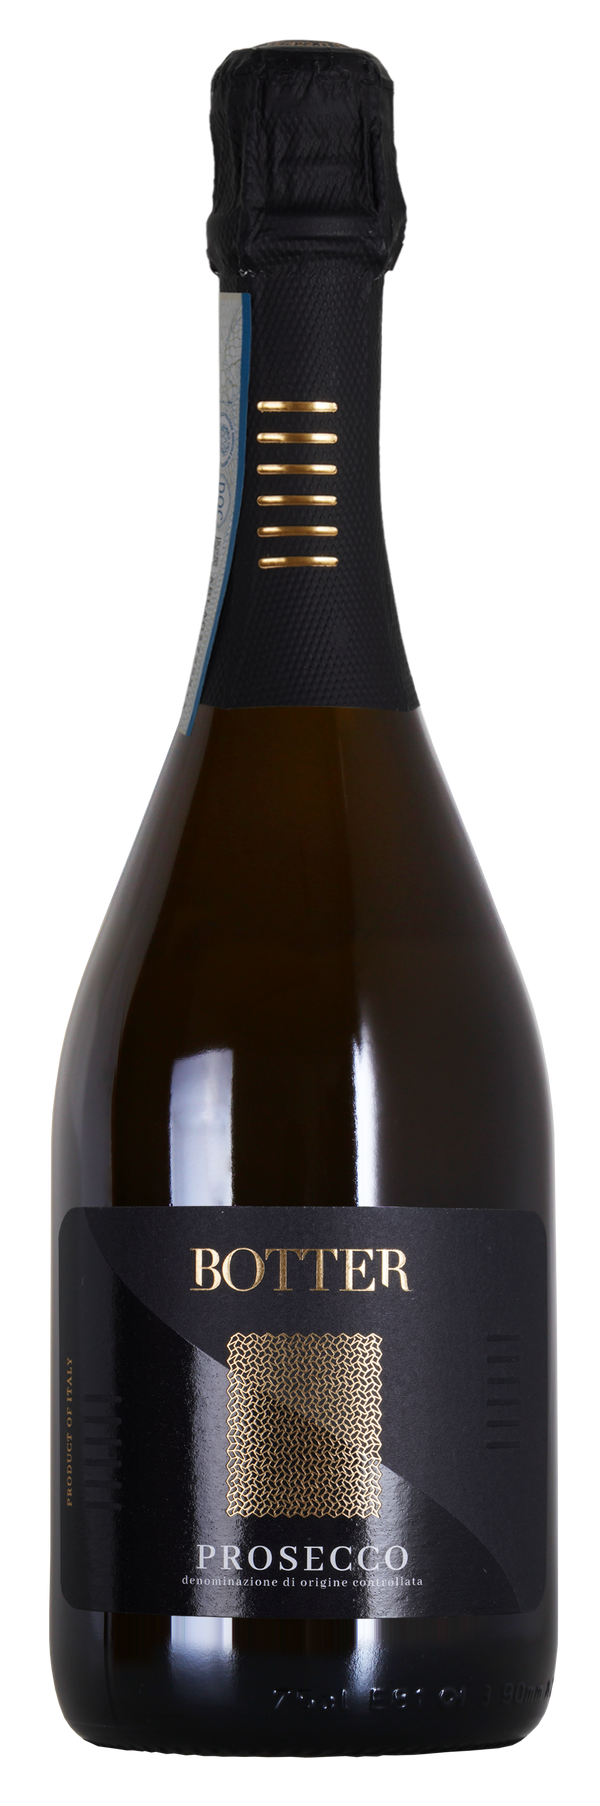 Botter - Prosecco - 11% - 750ml Bottle